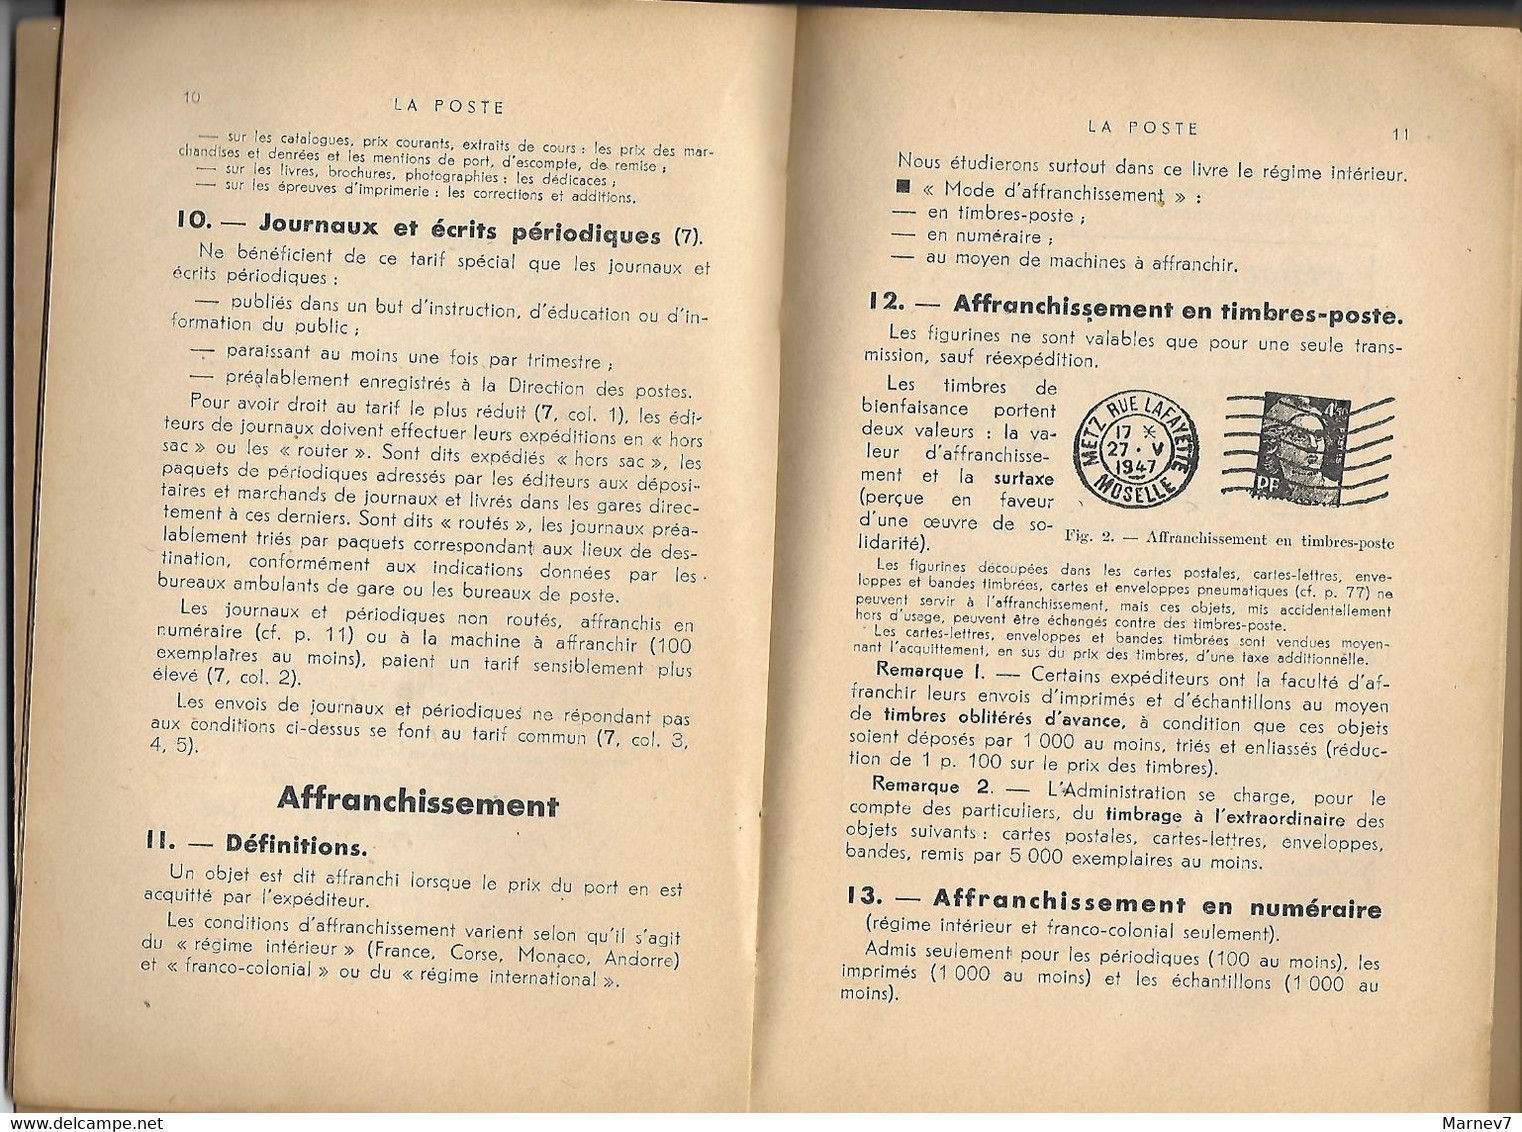 Petit Livre - La POSTE PTT Chèques Postaux - Cours Complet De Commerce Par Yvonne COURT Professeur - Postes - 1947 - Management